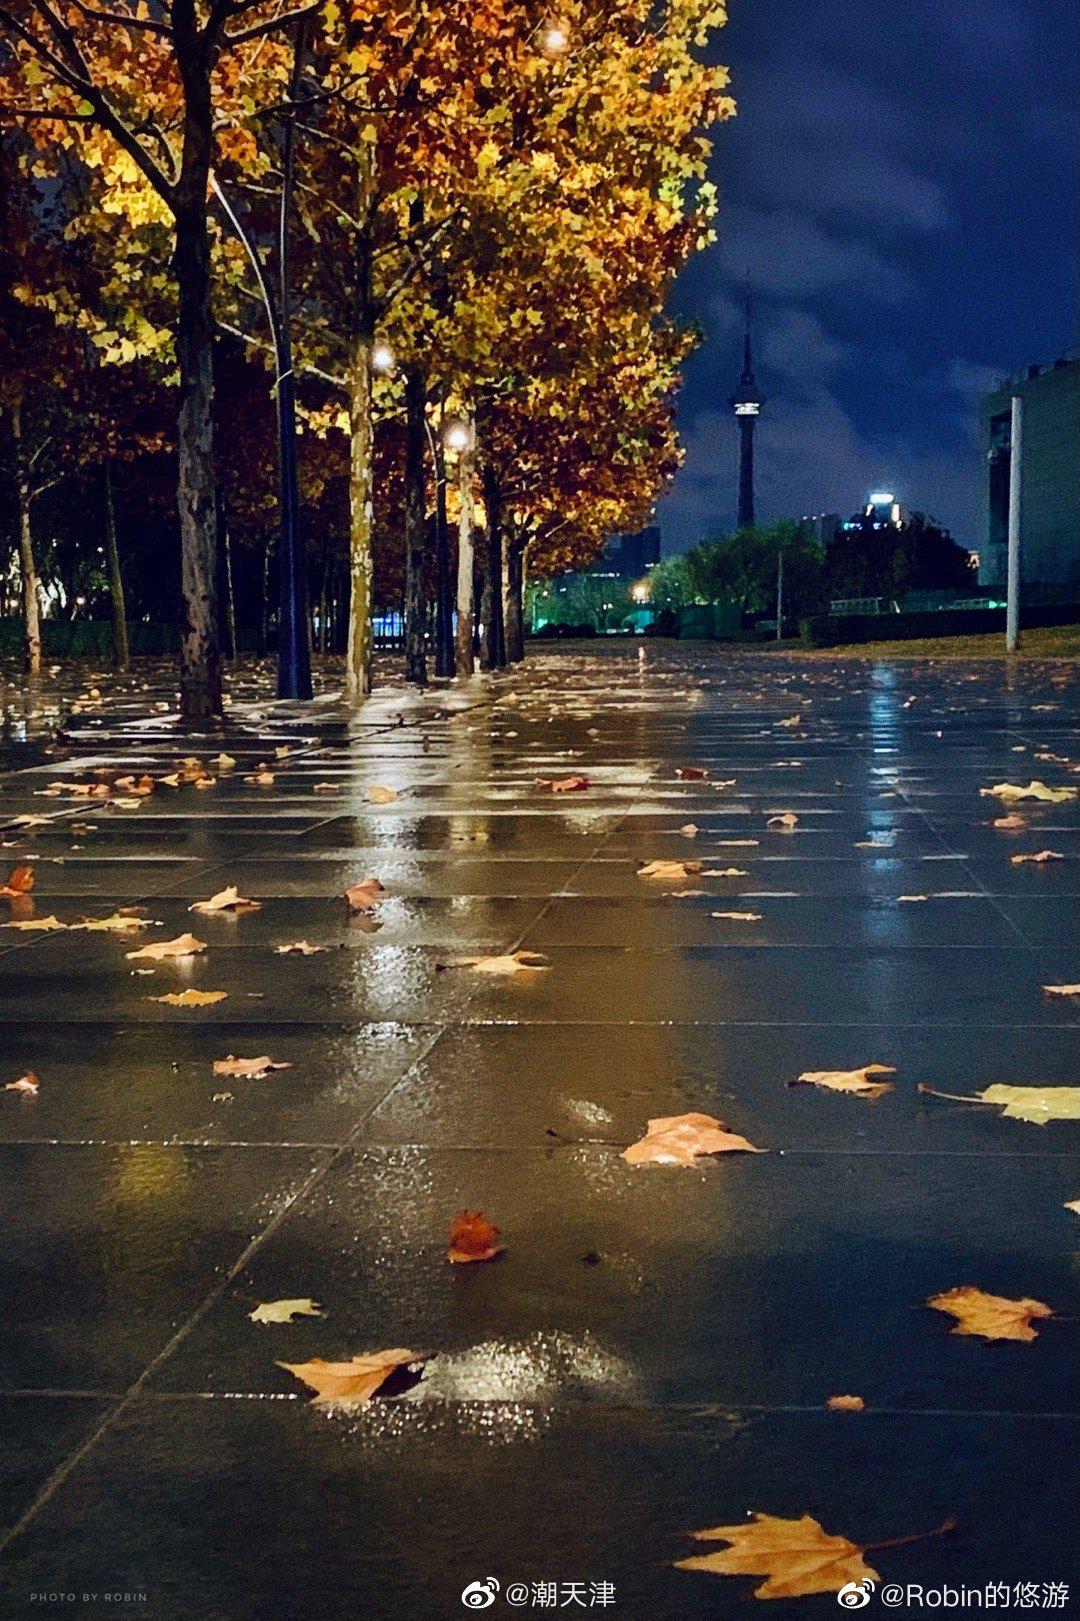 夜晚秋雨的图片图片